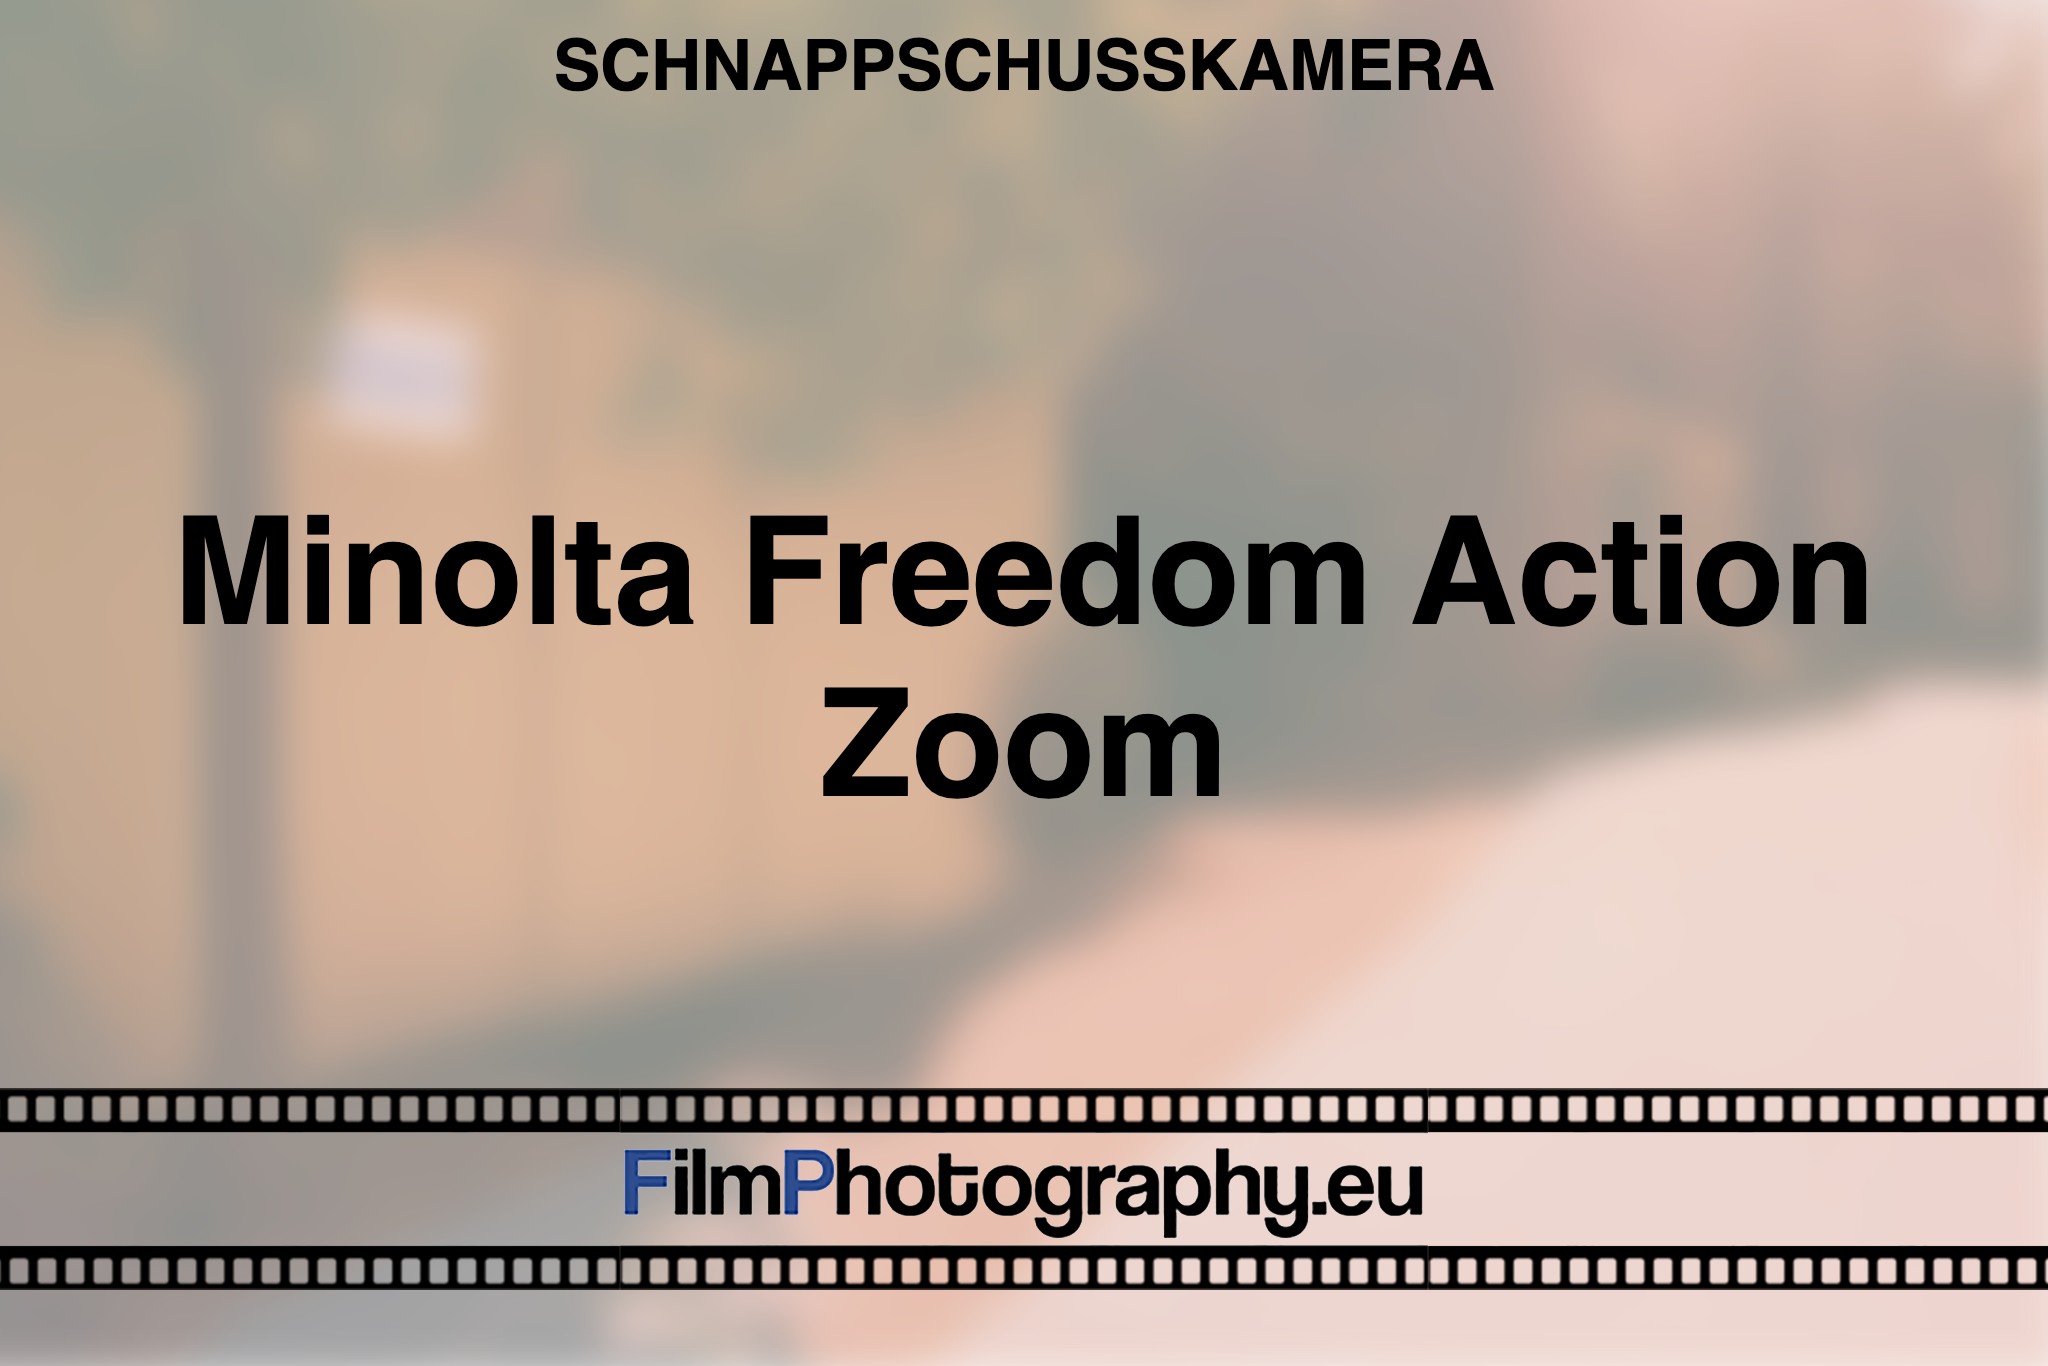 minolta-freedom-action-zoom-schnappschusskamera-bnv